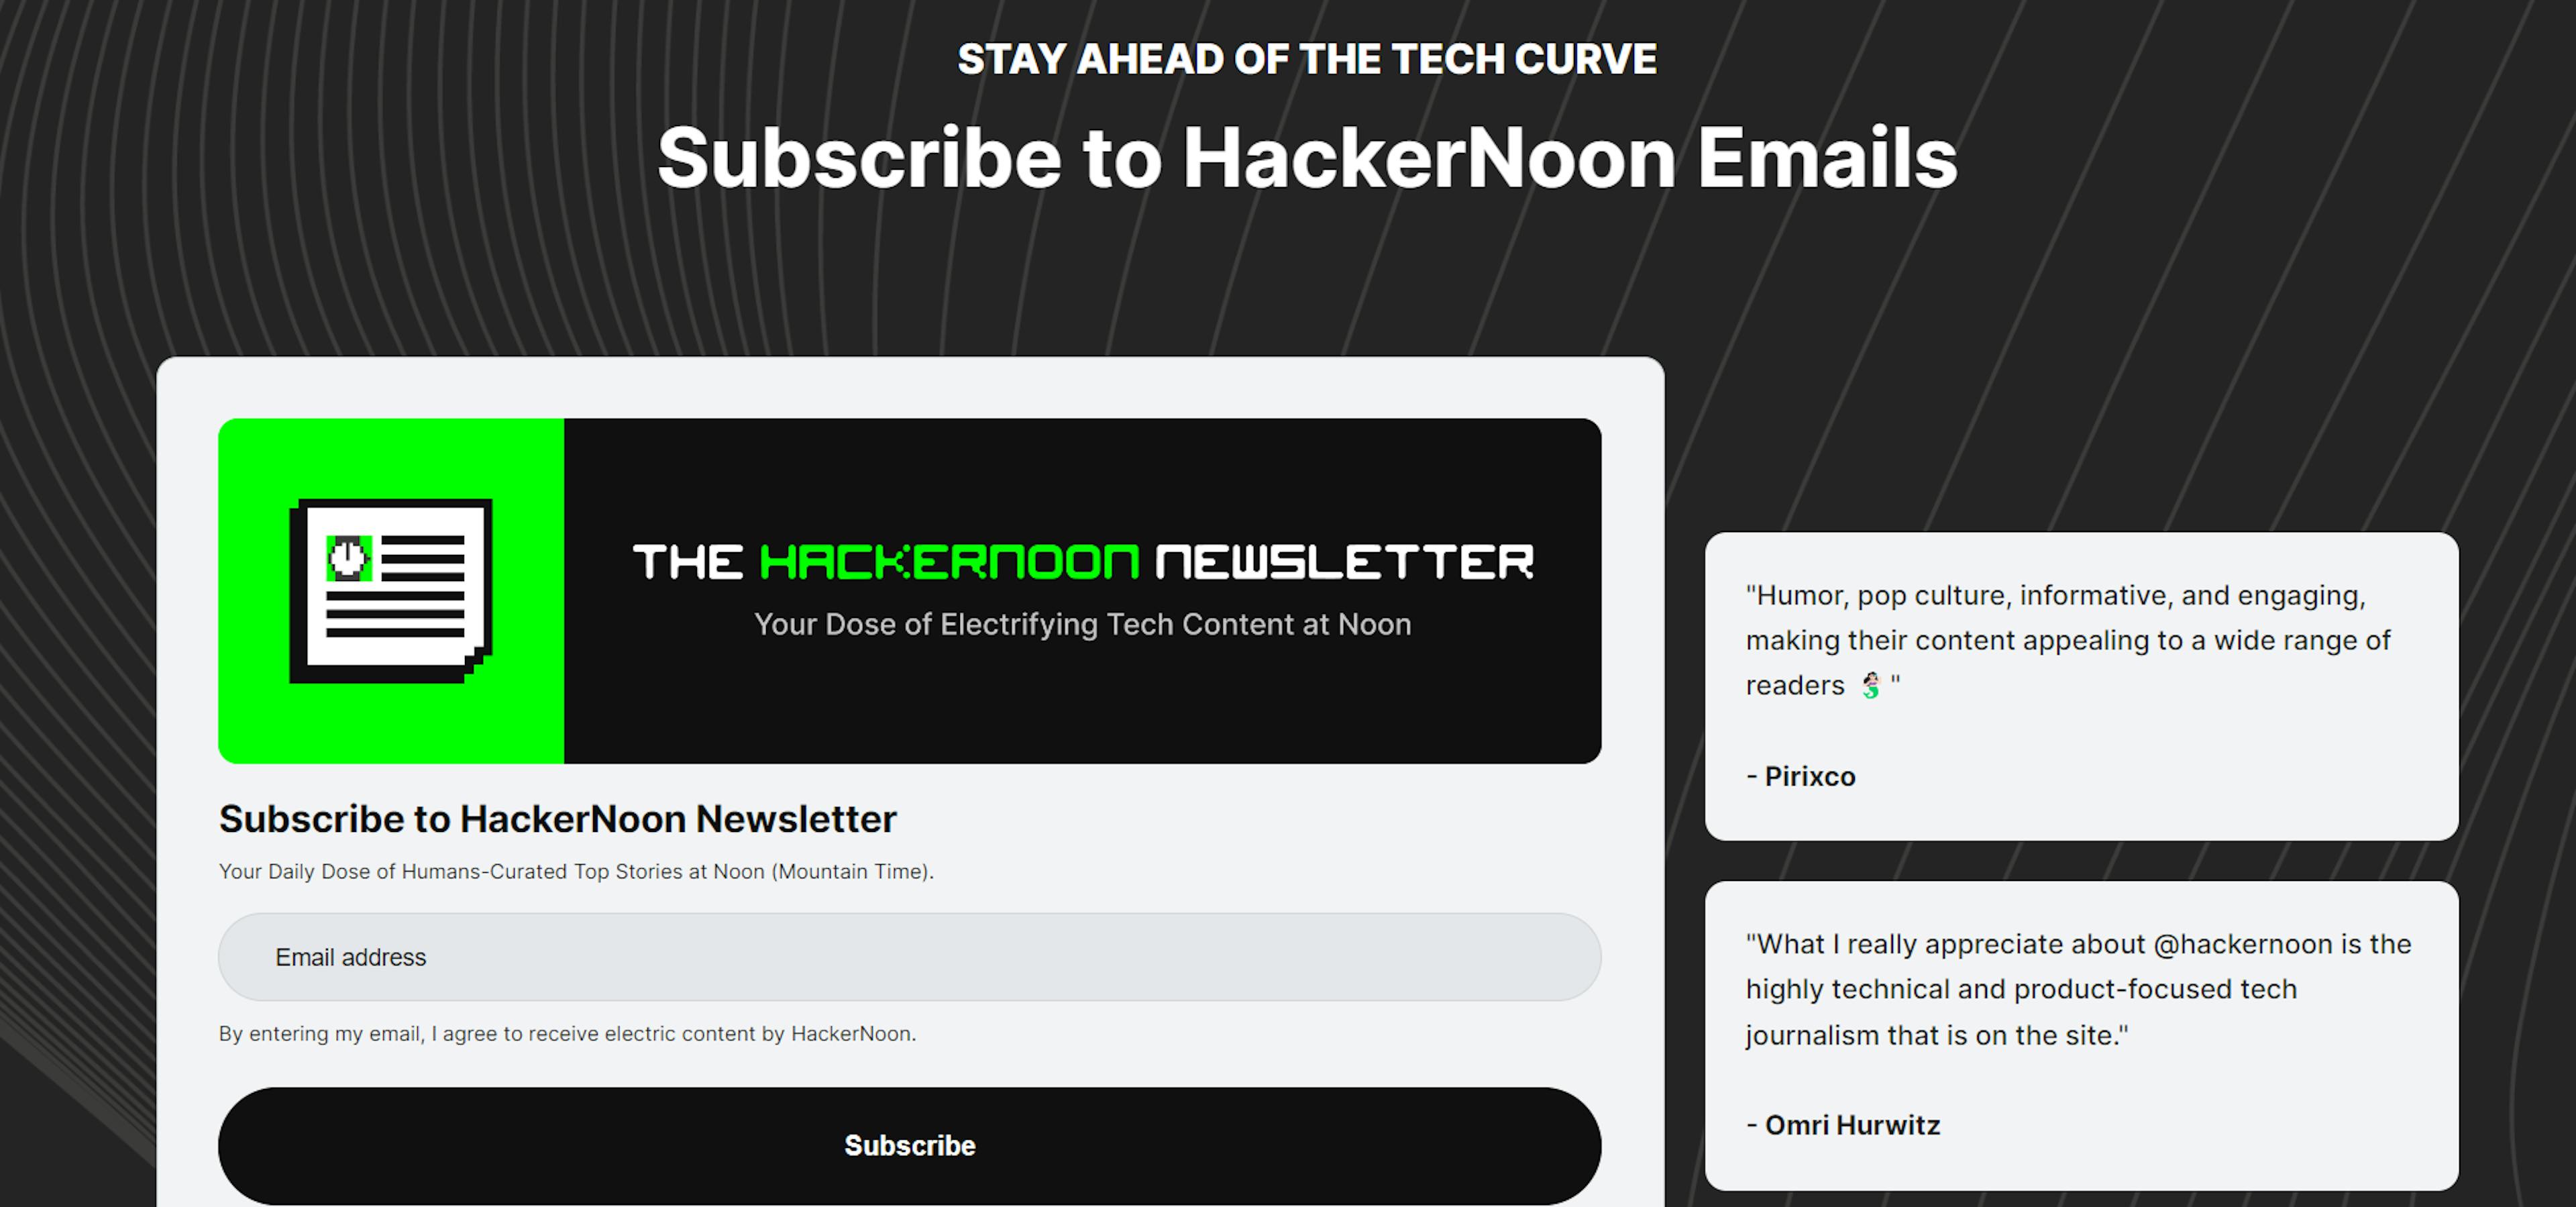 featured image - Tech News überarbeitet 🗞️ Erfahren Sie alles über die neue E-Mail-Seite von HackerNoon